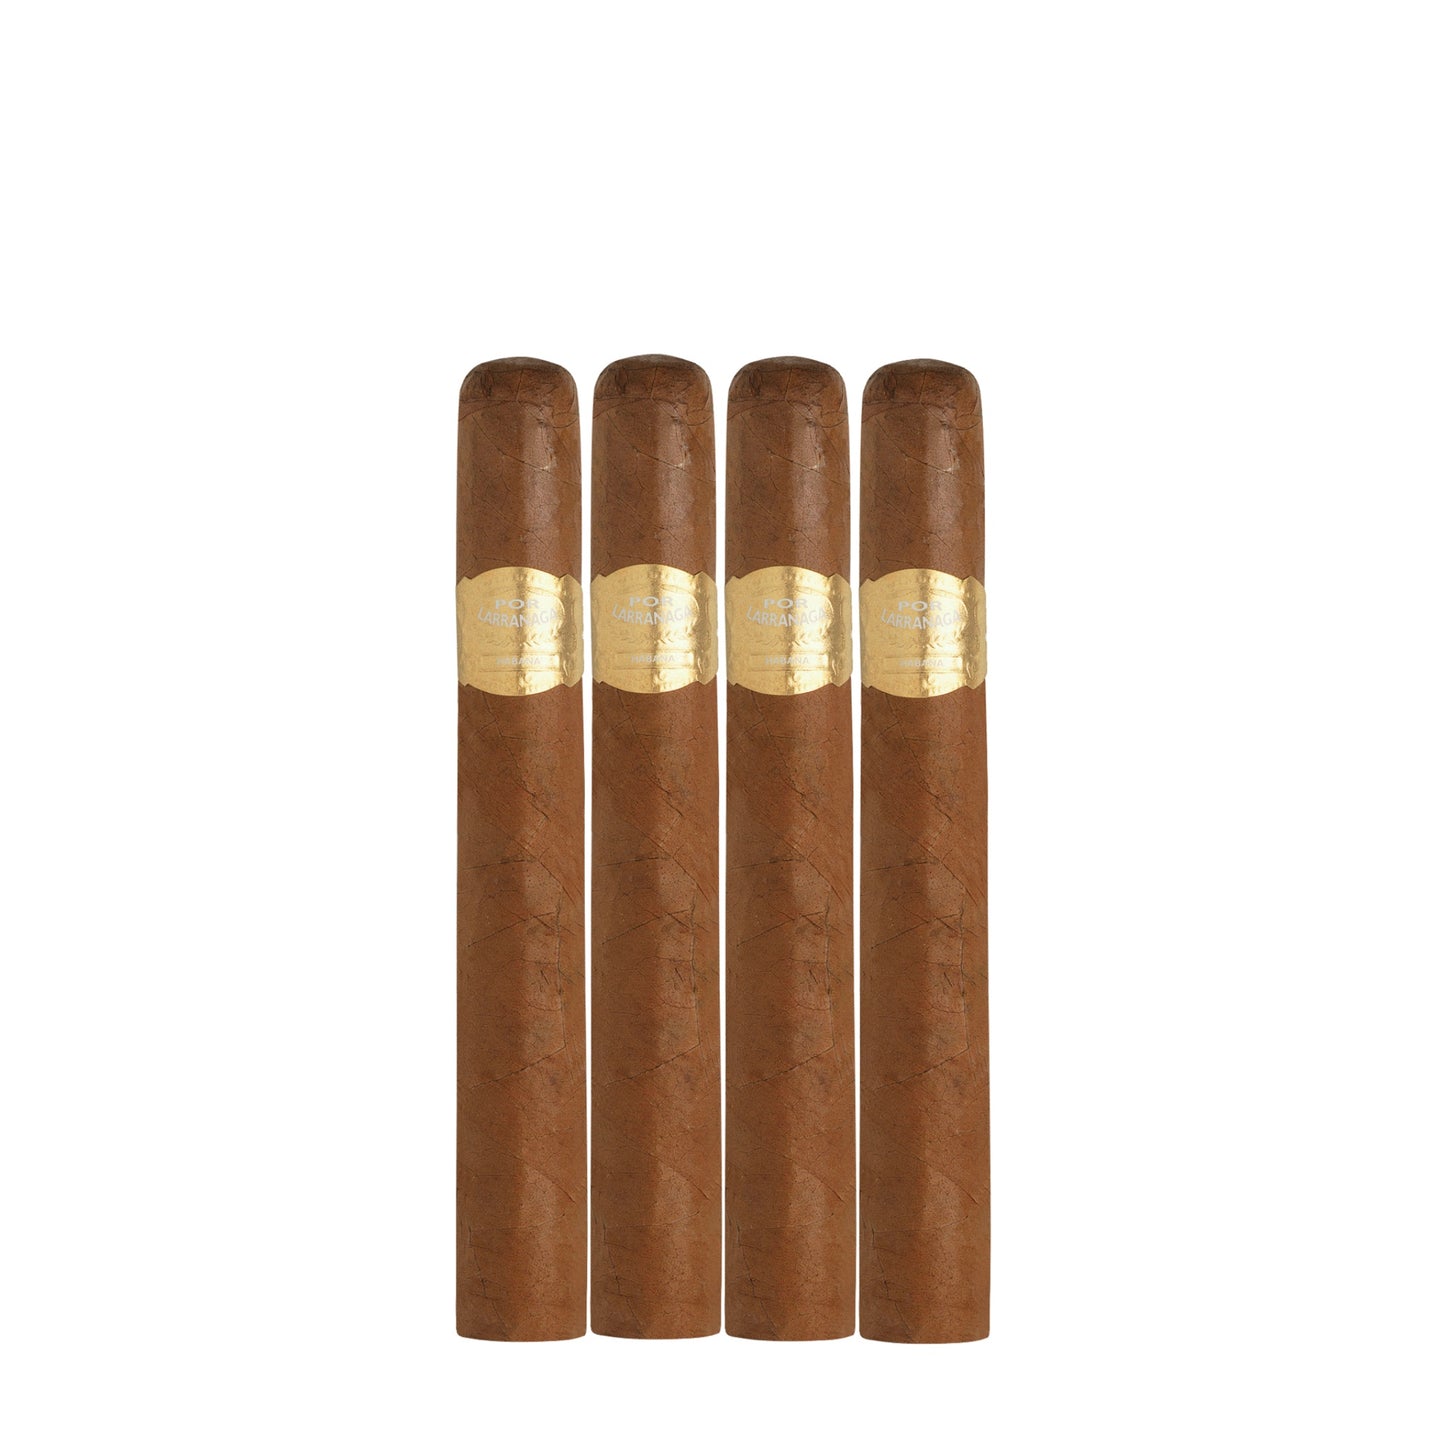 Por Larrañaga Petit Coronas - Cigars to share